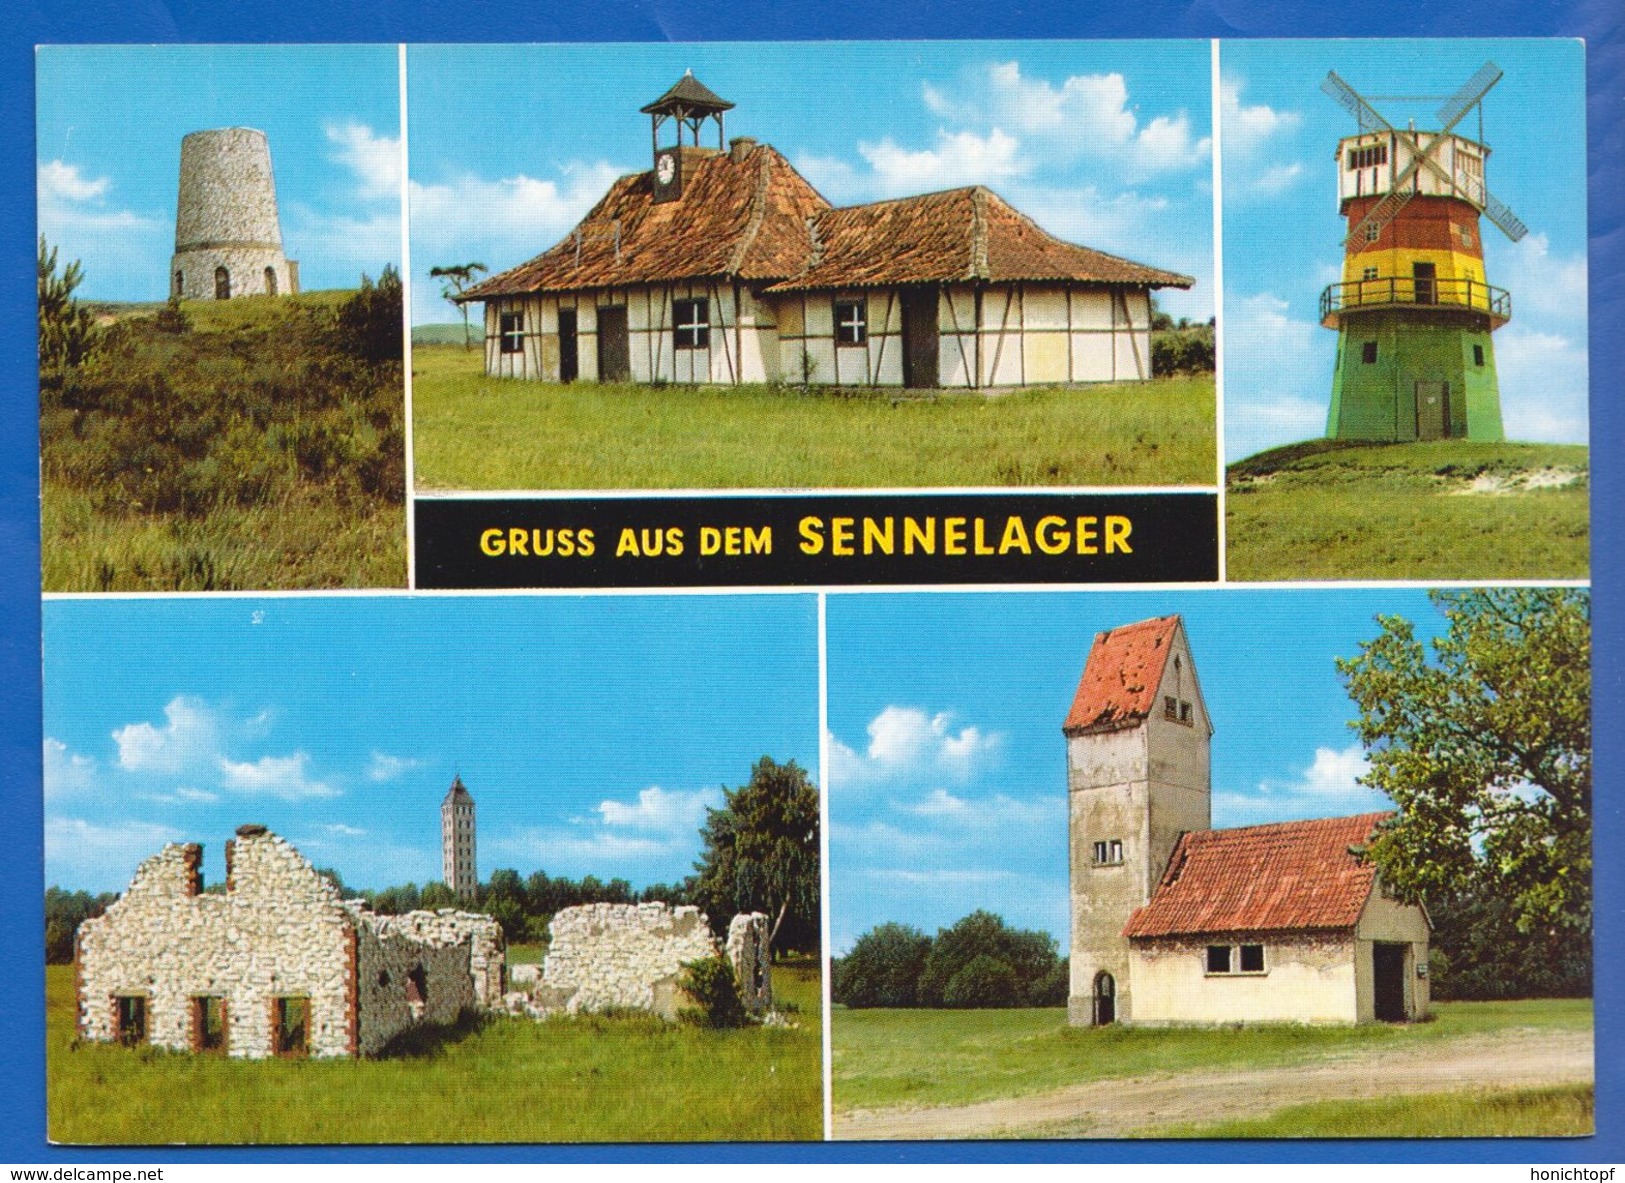 Deutschland; Sennelager Paderborn; Multibildkarte; Bild2 - Paderborn